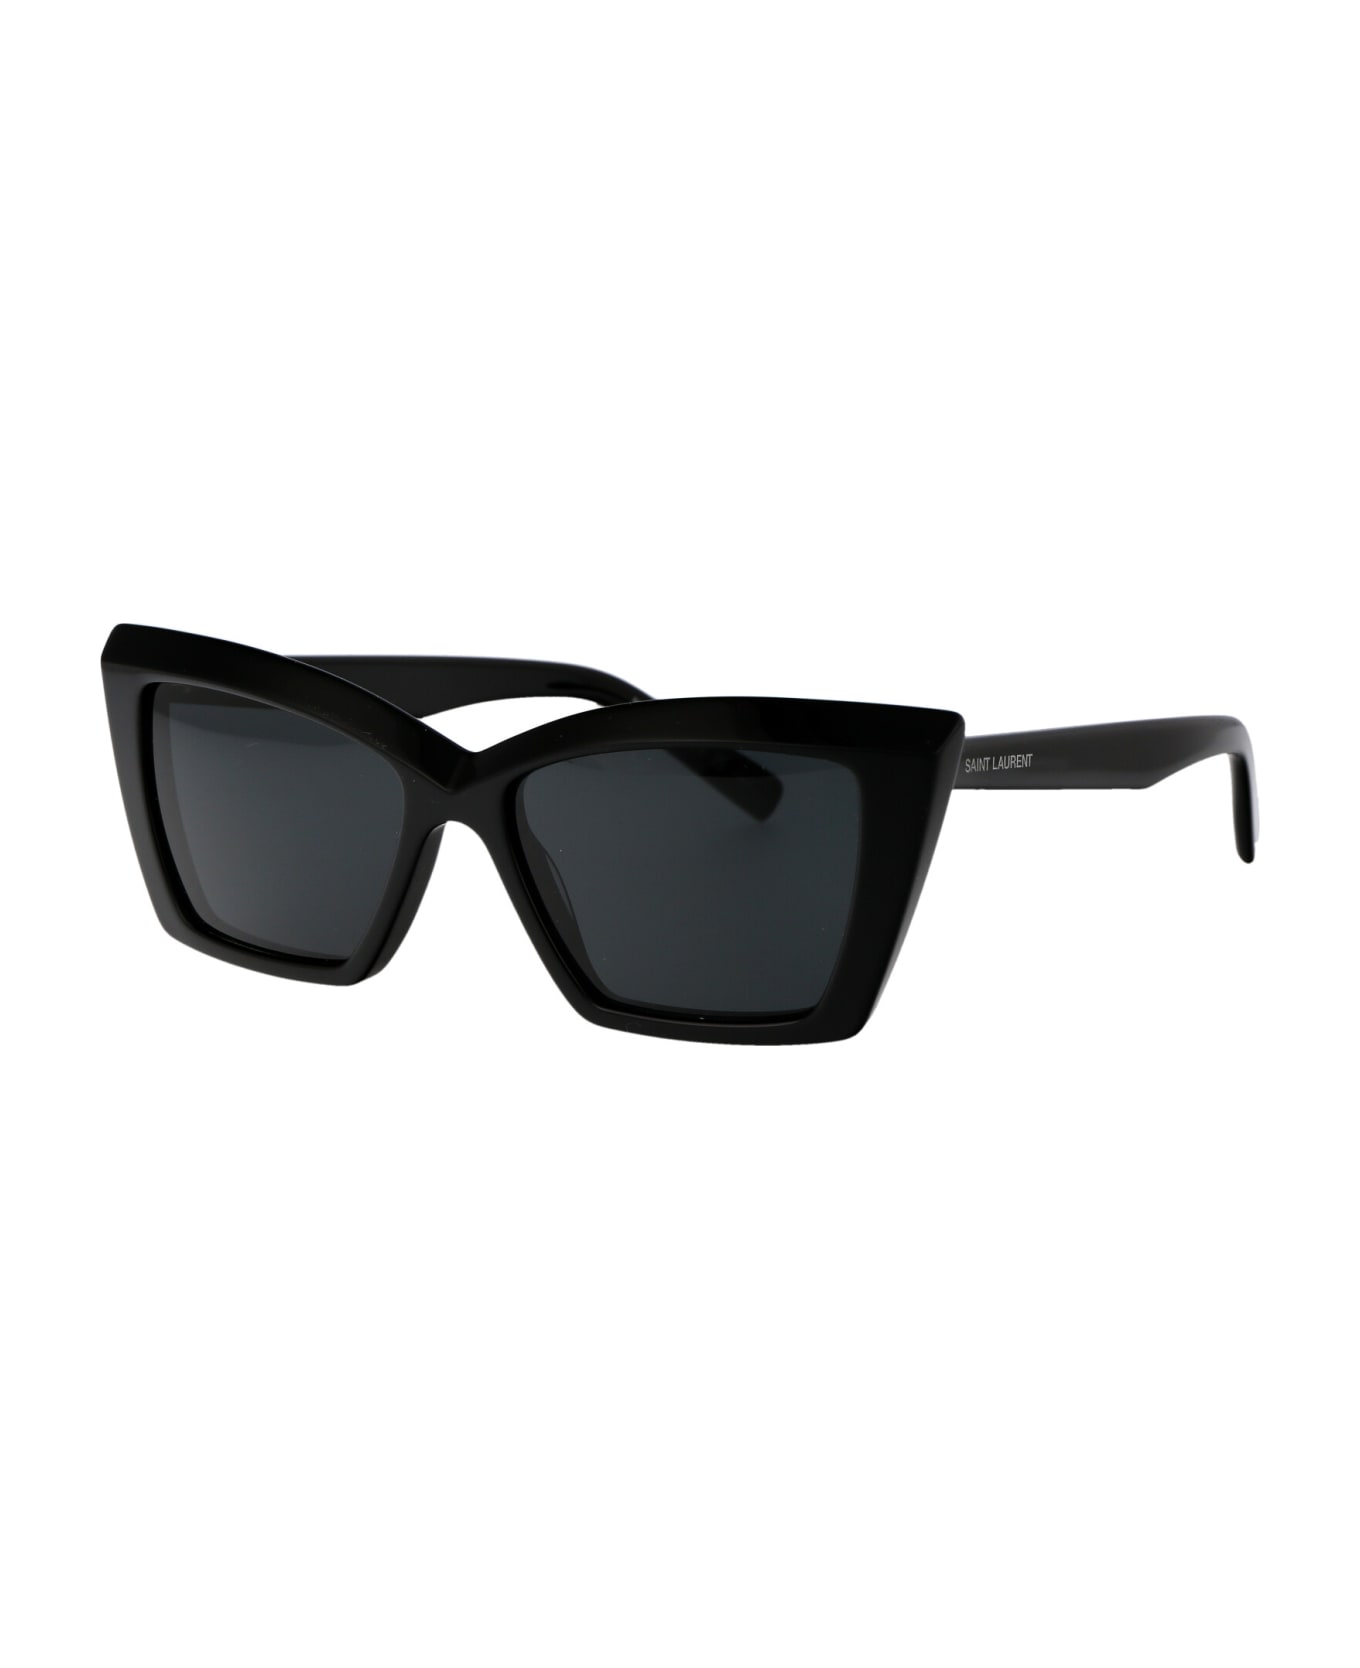 Saint Laurent Eyewear Sl 657 Sunglasses - 001 BLACK BLACK BLACK